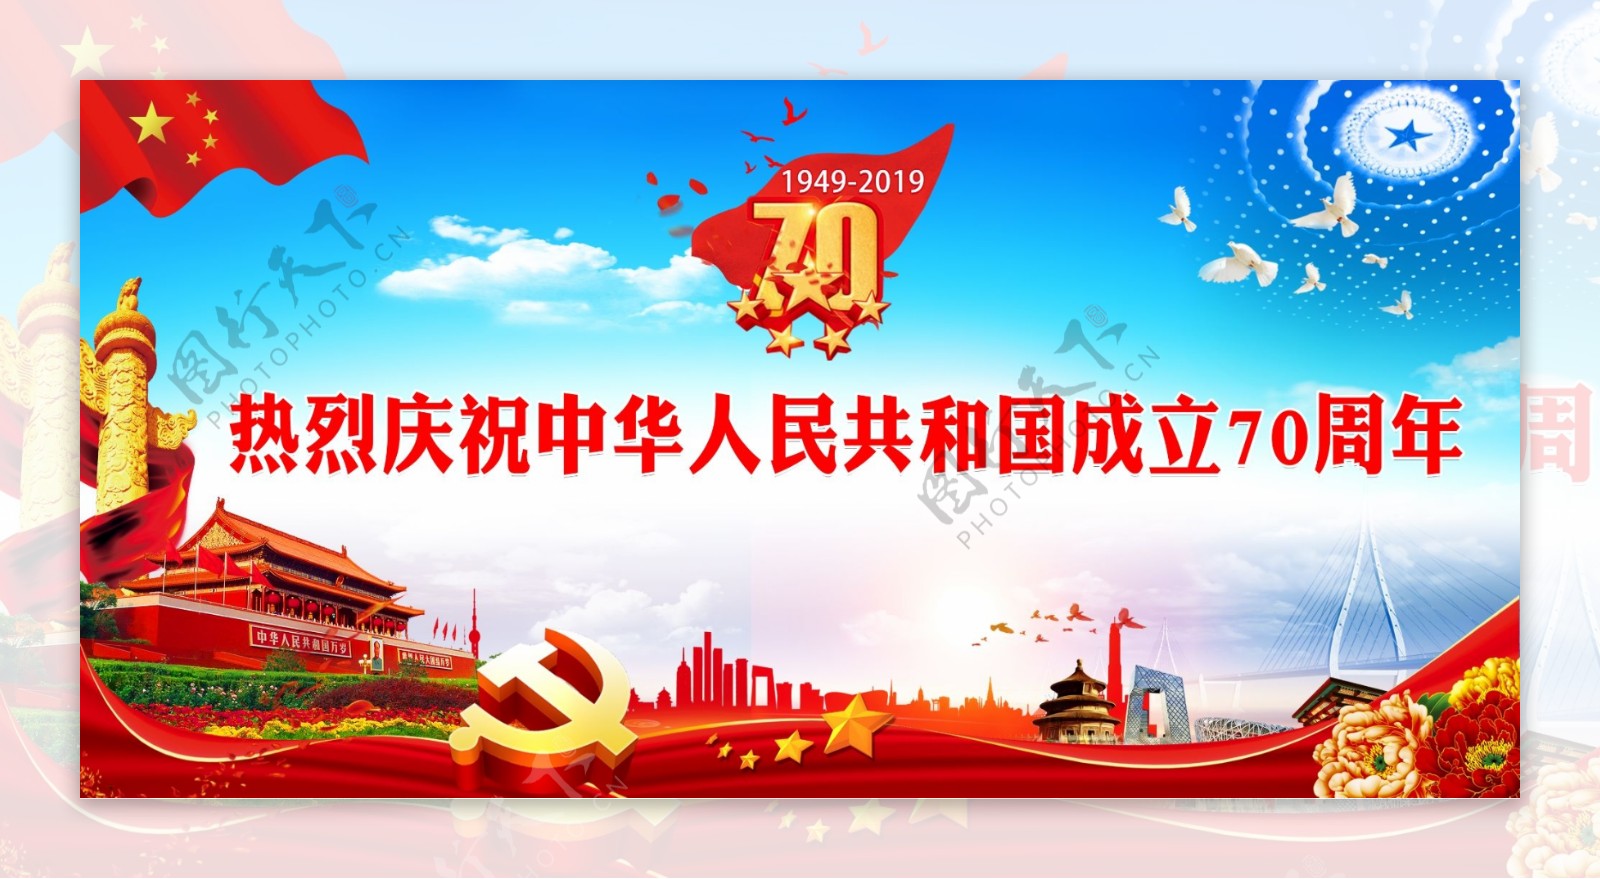 热烈庆祝中华人民共和国成立70